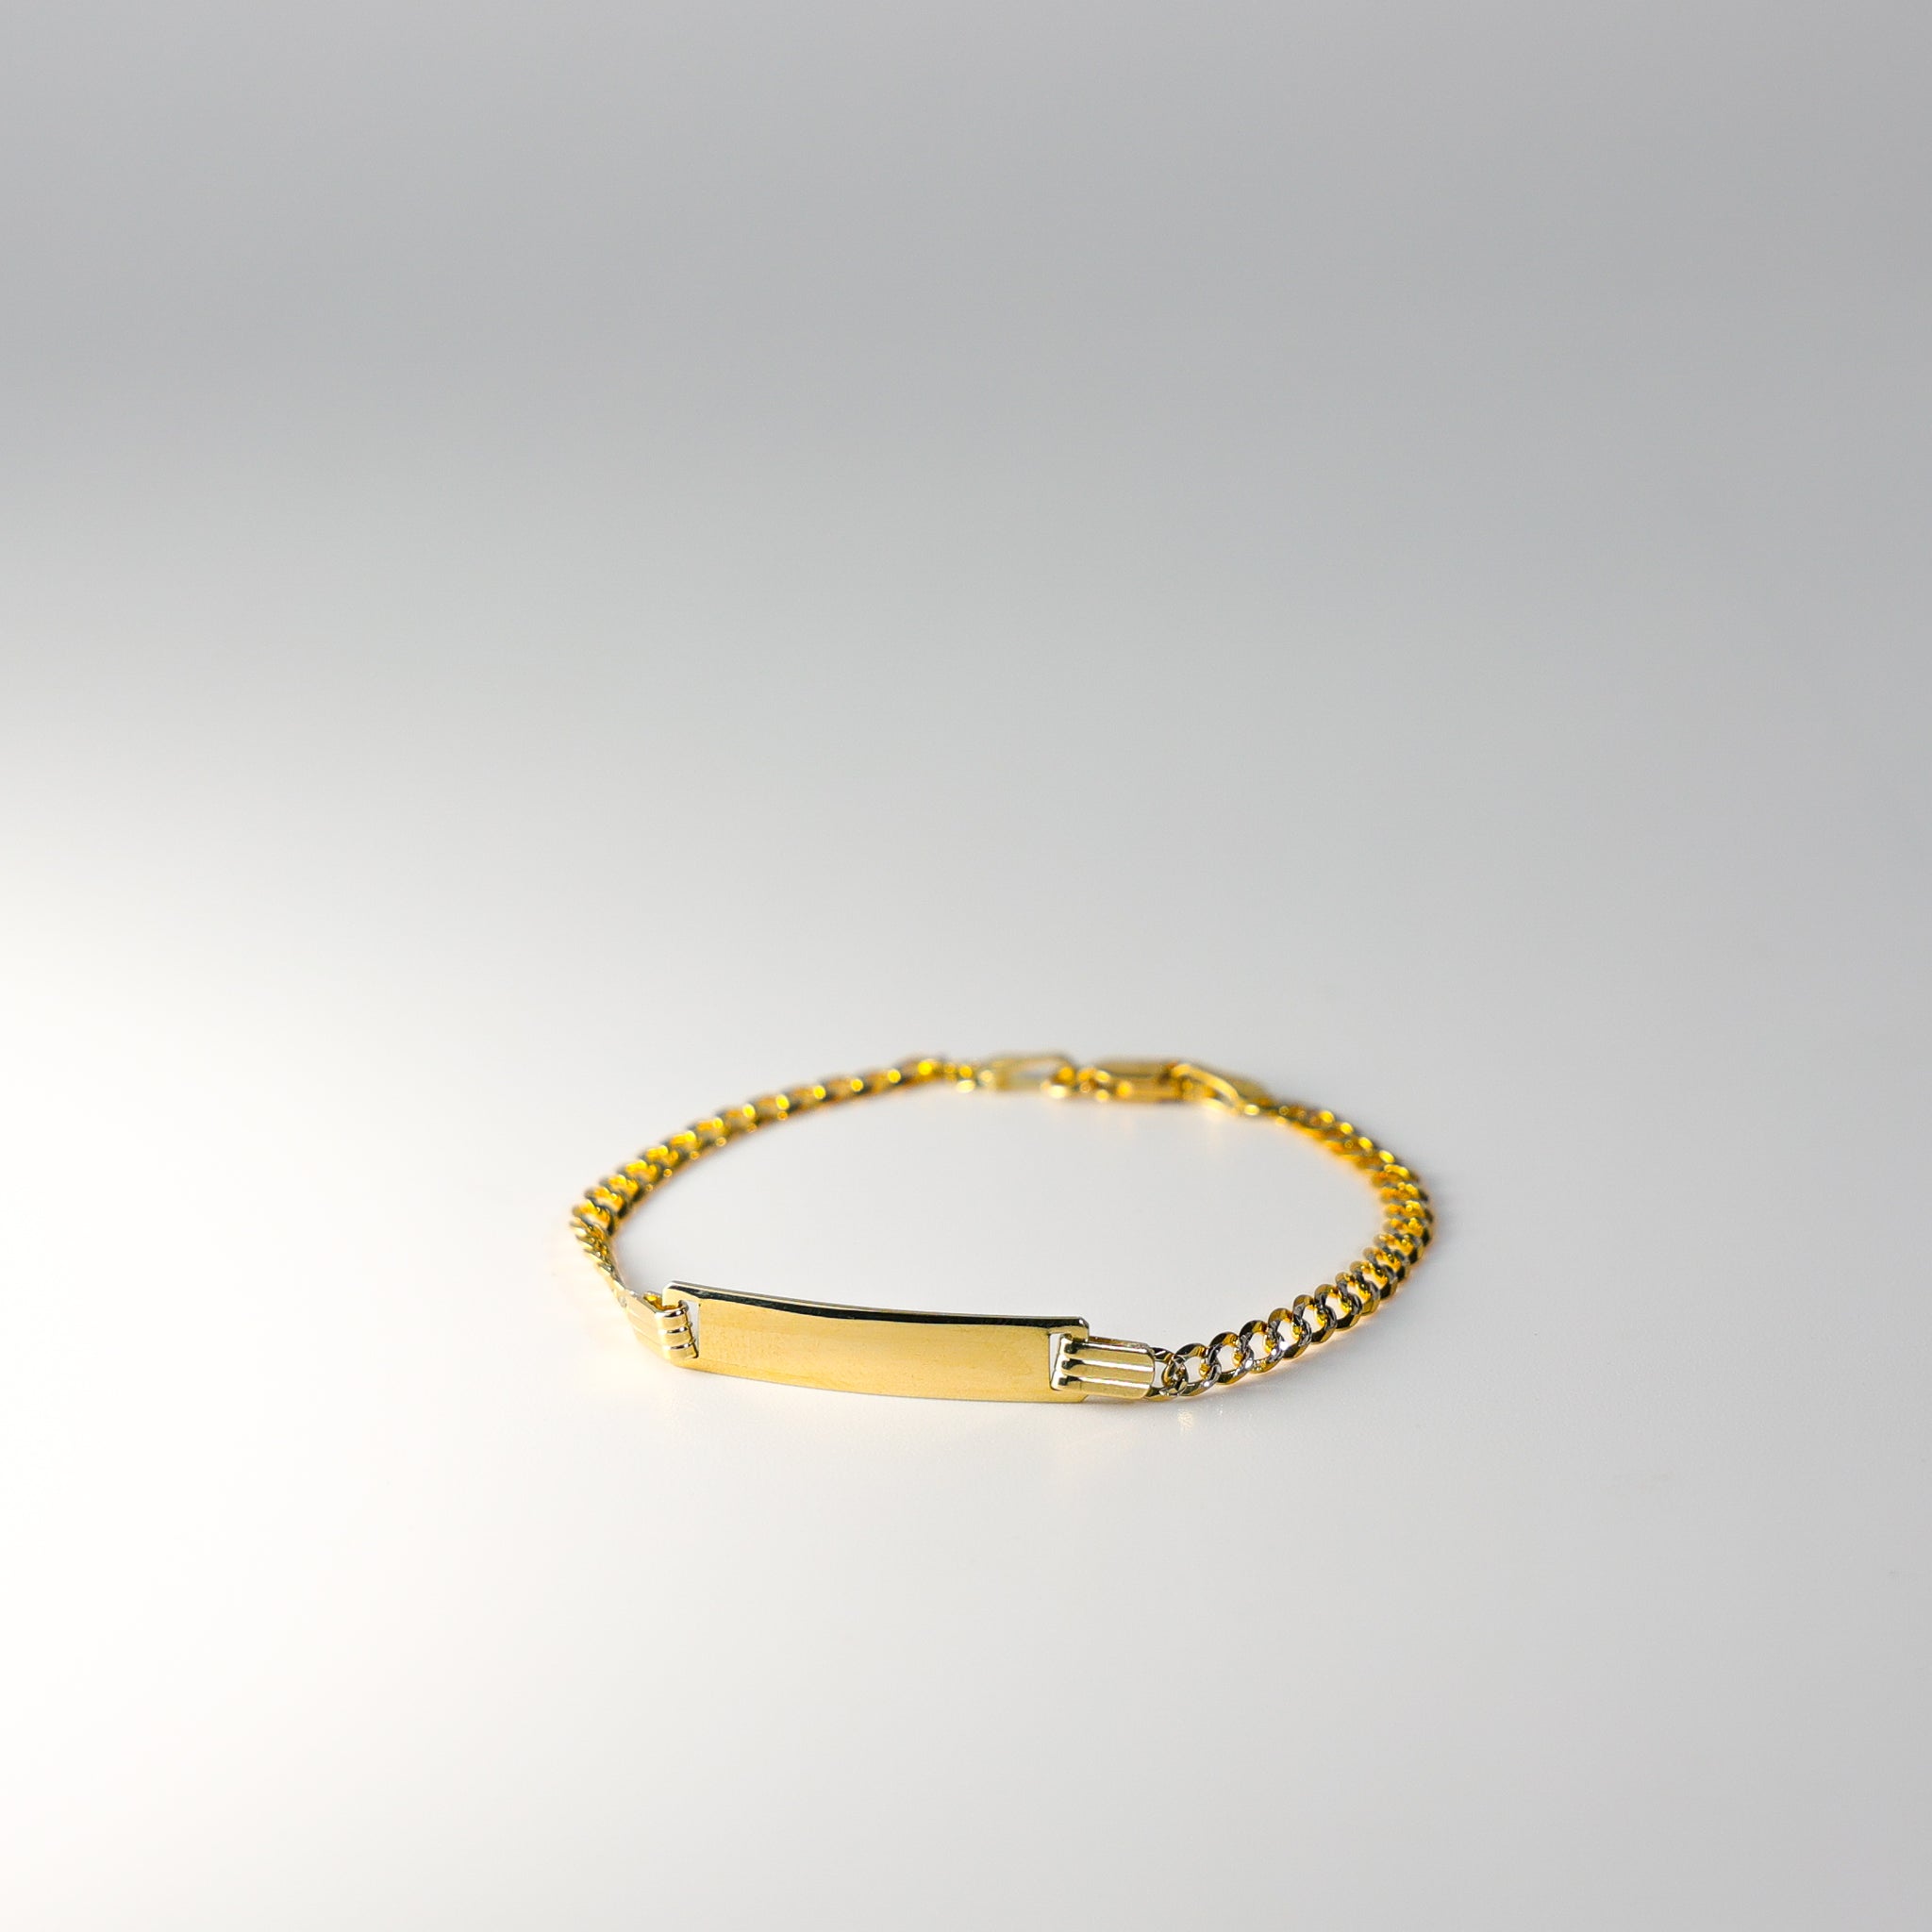 Bracelet-Gold ID bracelet-14K solid yellow - goldcrosses.com